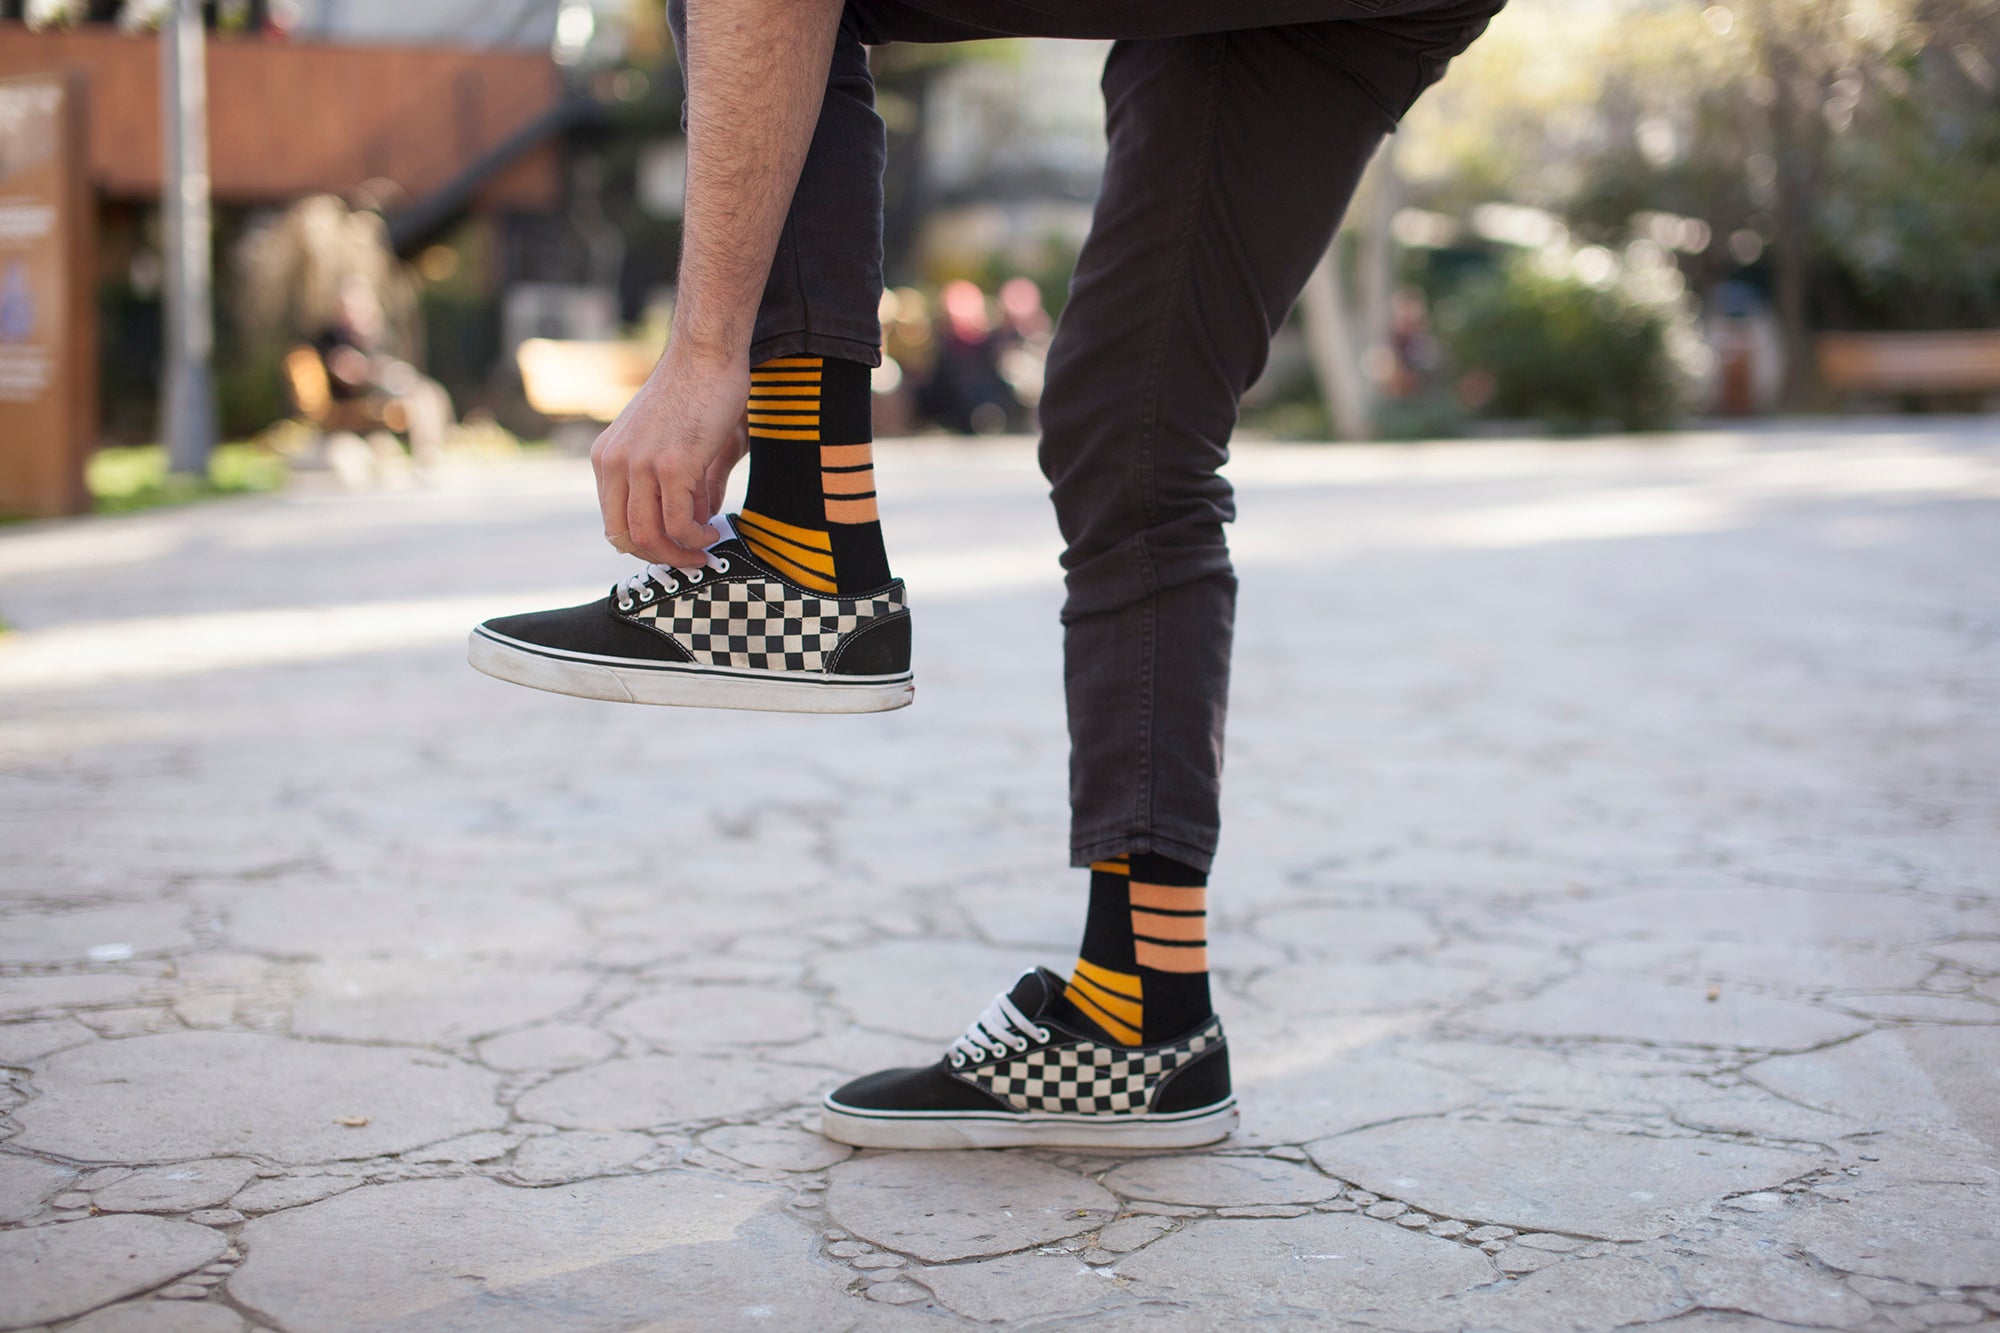 Men's Orange Stripe Socks